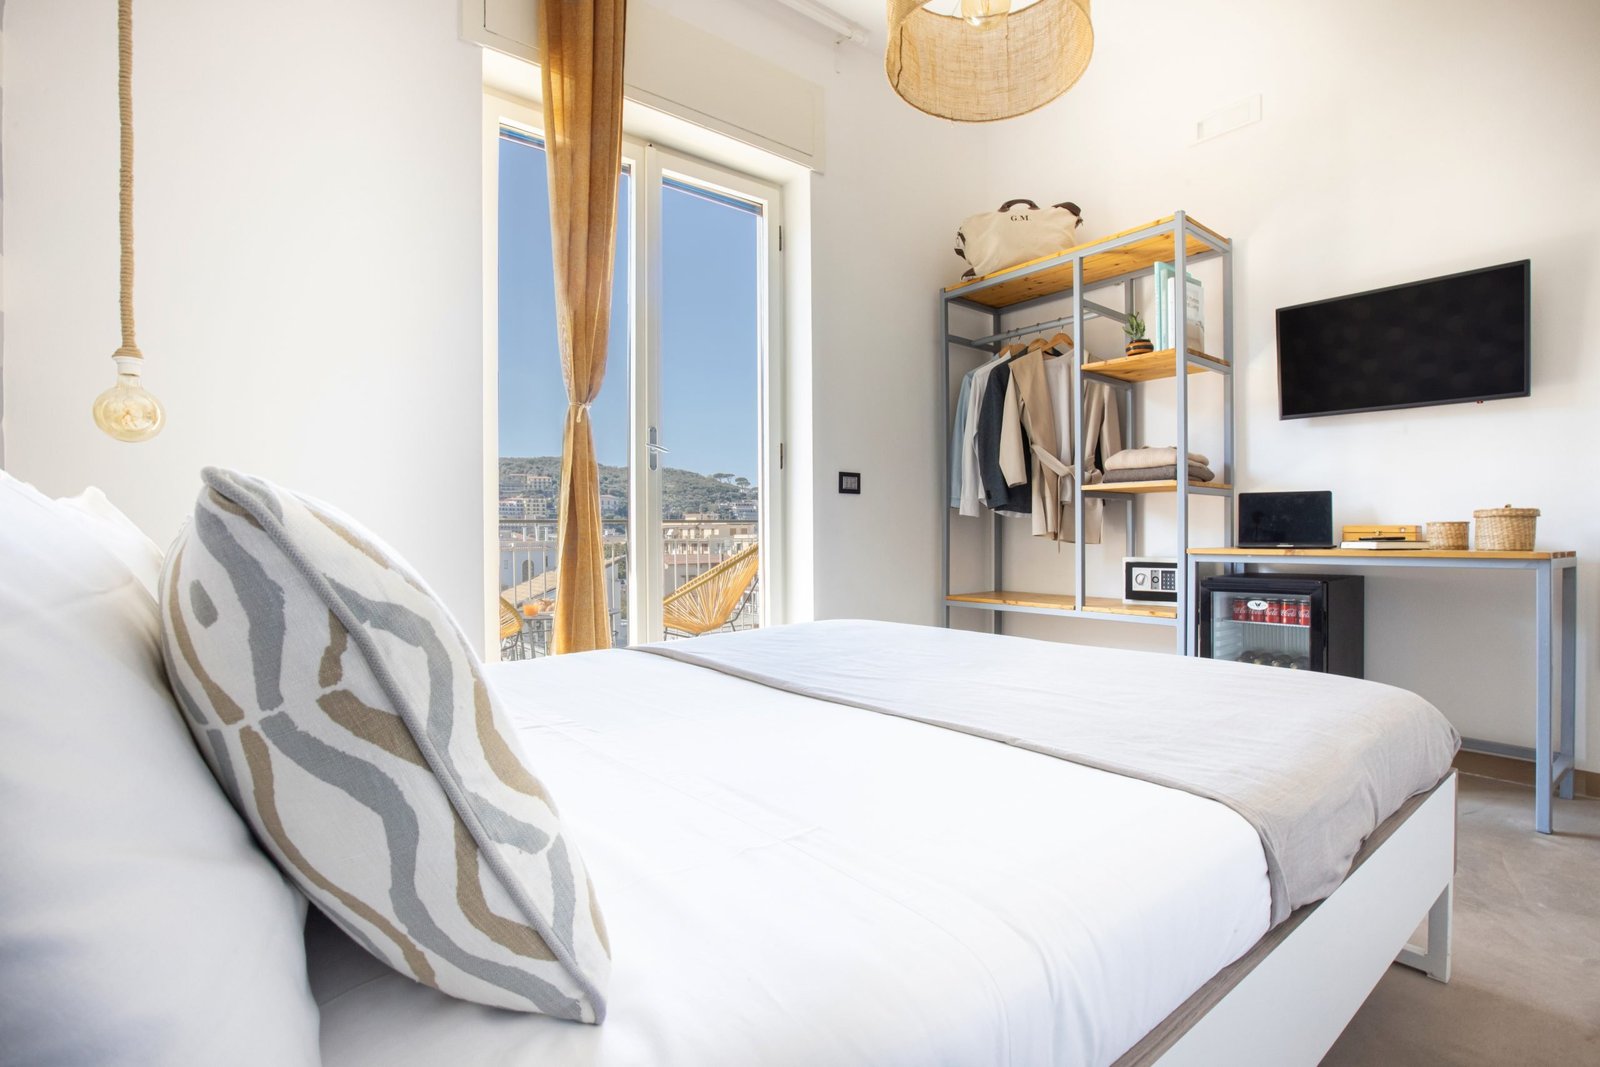 Mediterranean Suites – Style Room